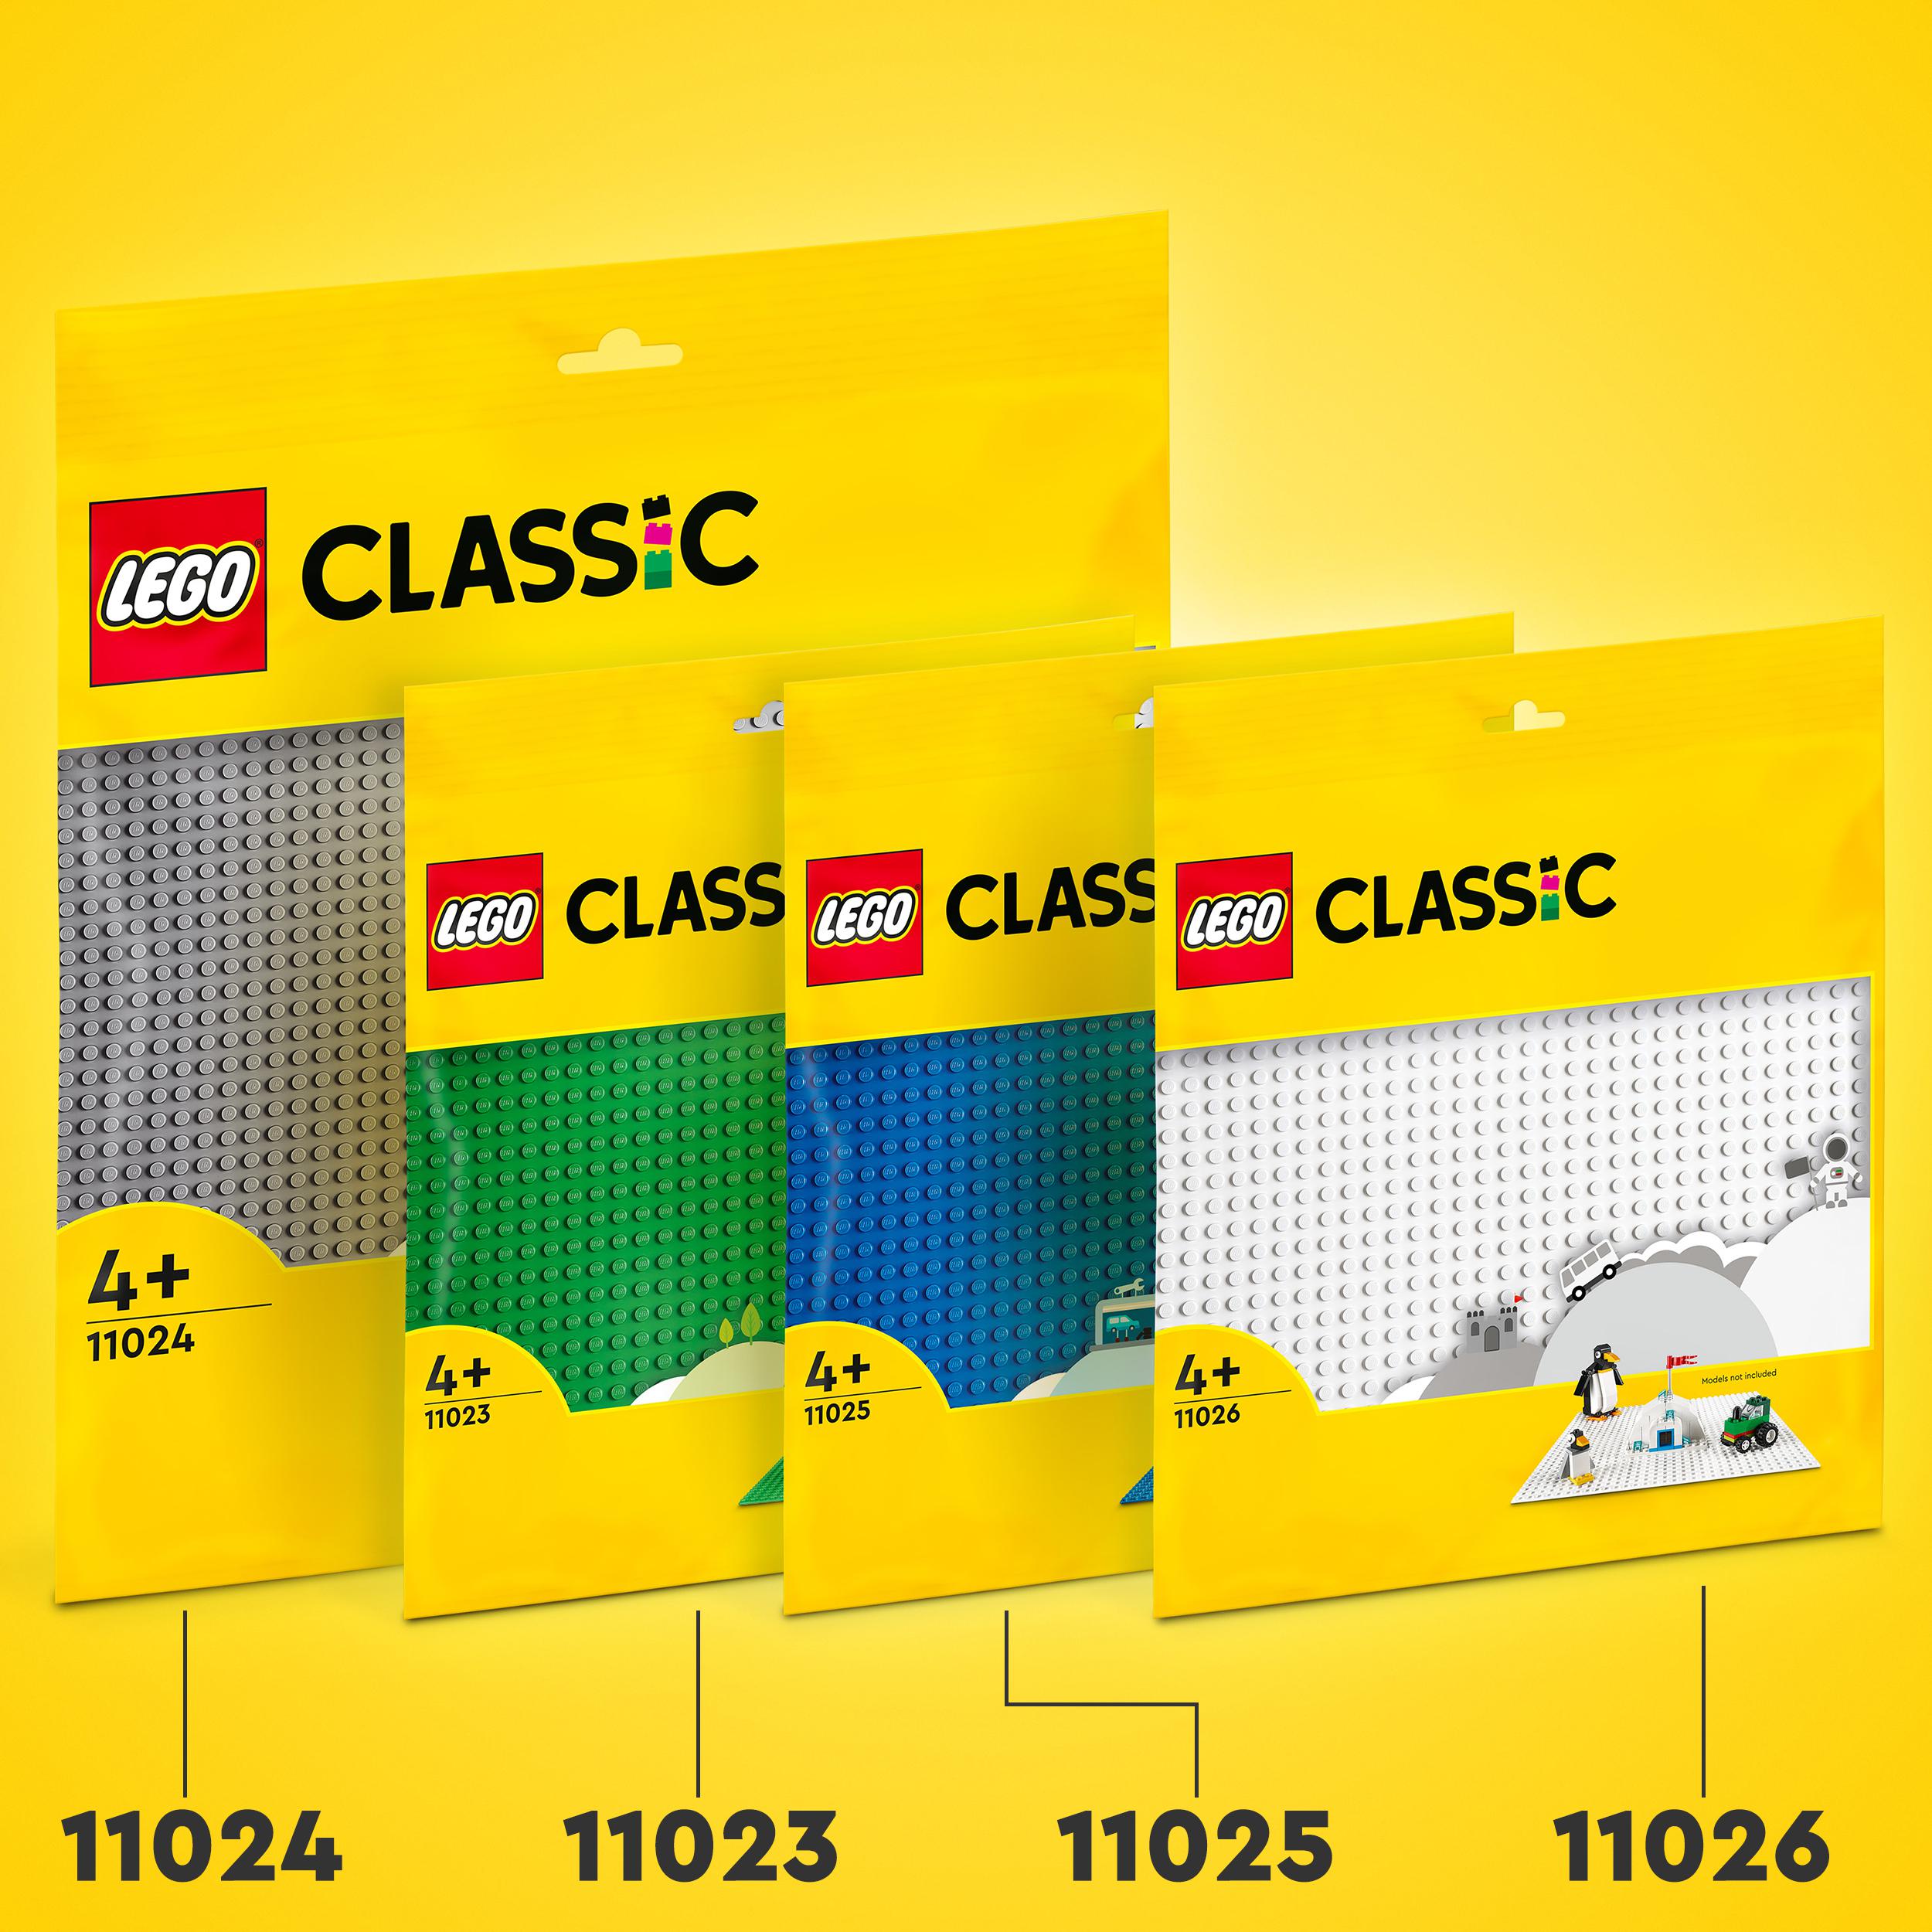 Lego classic 11024 base grigia, tavola per costruzioni quadrata con 48x48 bottoncini, piattaforma classica per mattoncini - LEGO CLASSIC, Lego